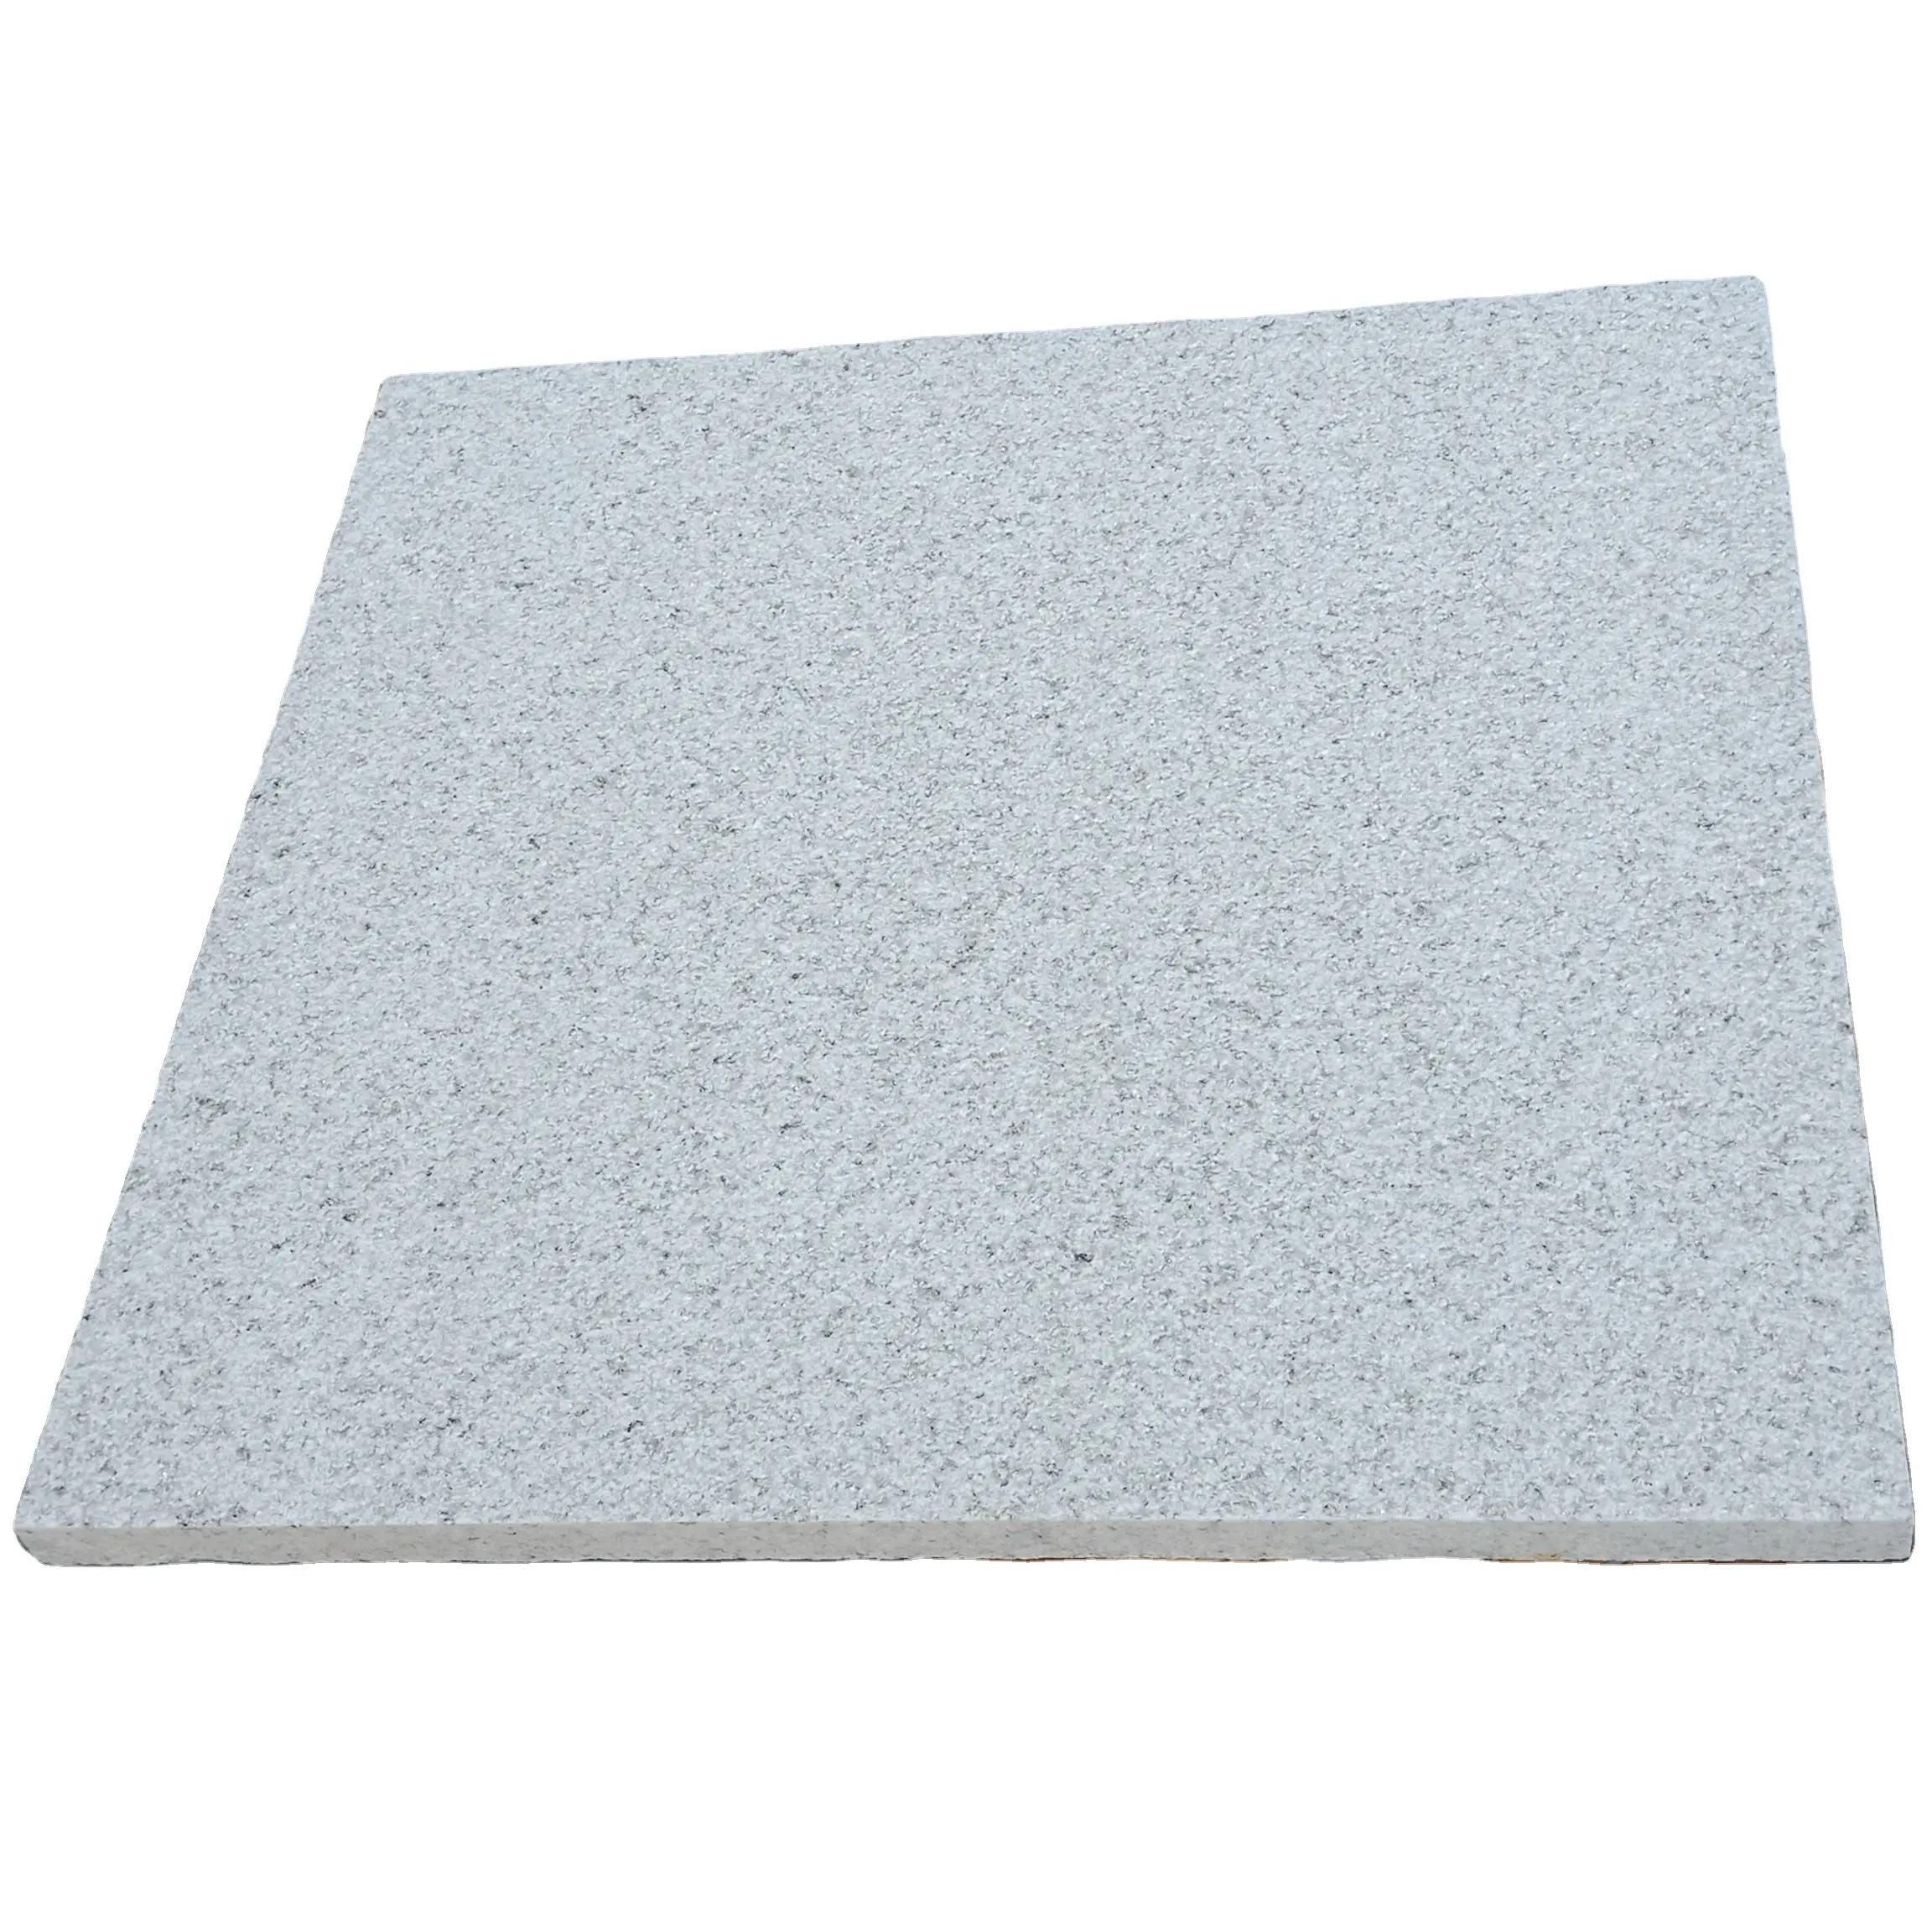 New Pearl White Granite Flooring Tiles 60x60